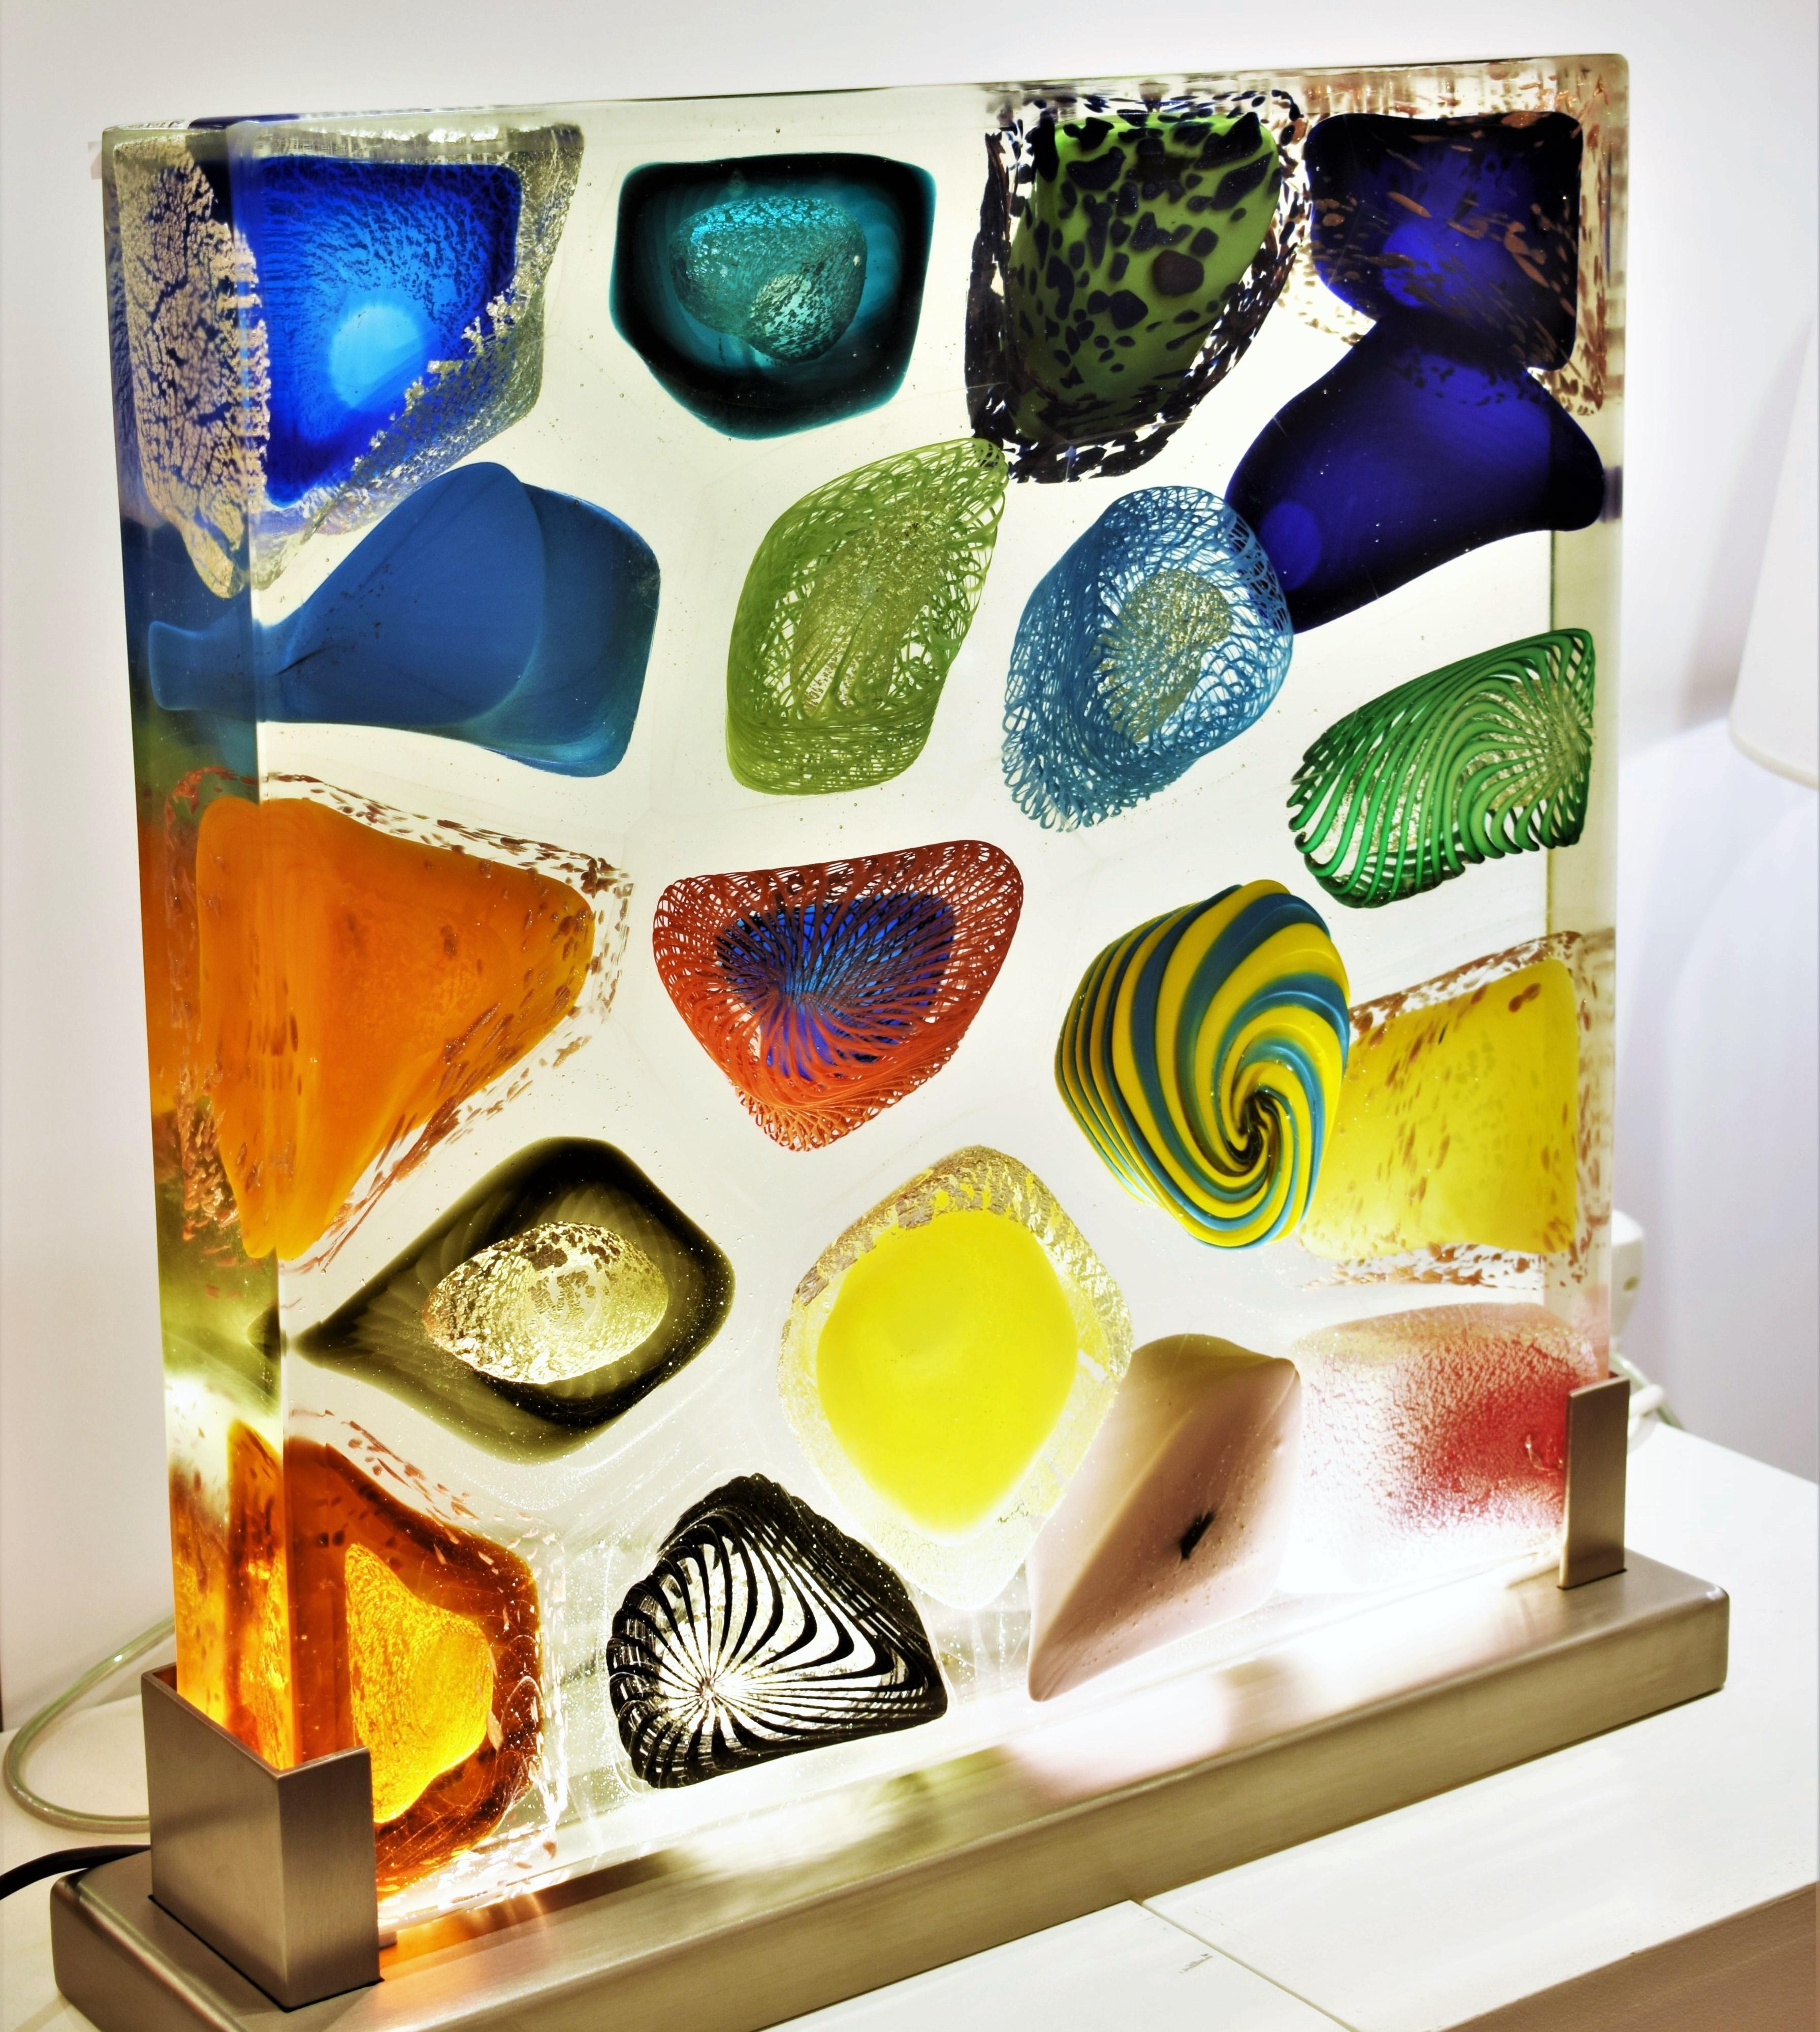 Monolithe lumineux en verre artistique de Murano. La sculpture artistique en verre de Murano est une expression créative et naturelle de l'artiste Eros Raffael, réalisée avec des cannes de verre transparentes et pastel, de l'argent, de l'or pur, de